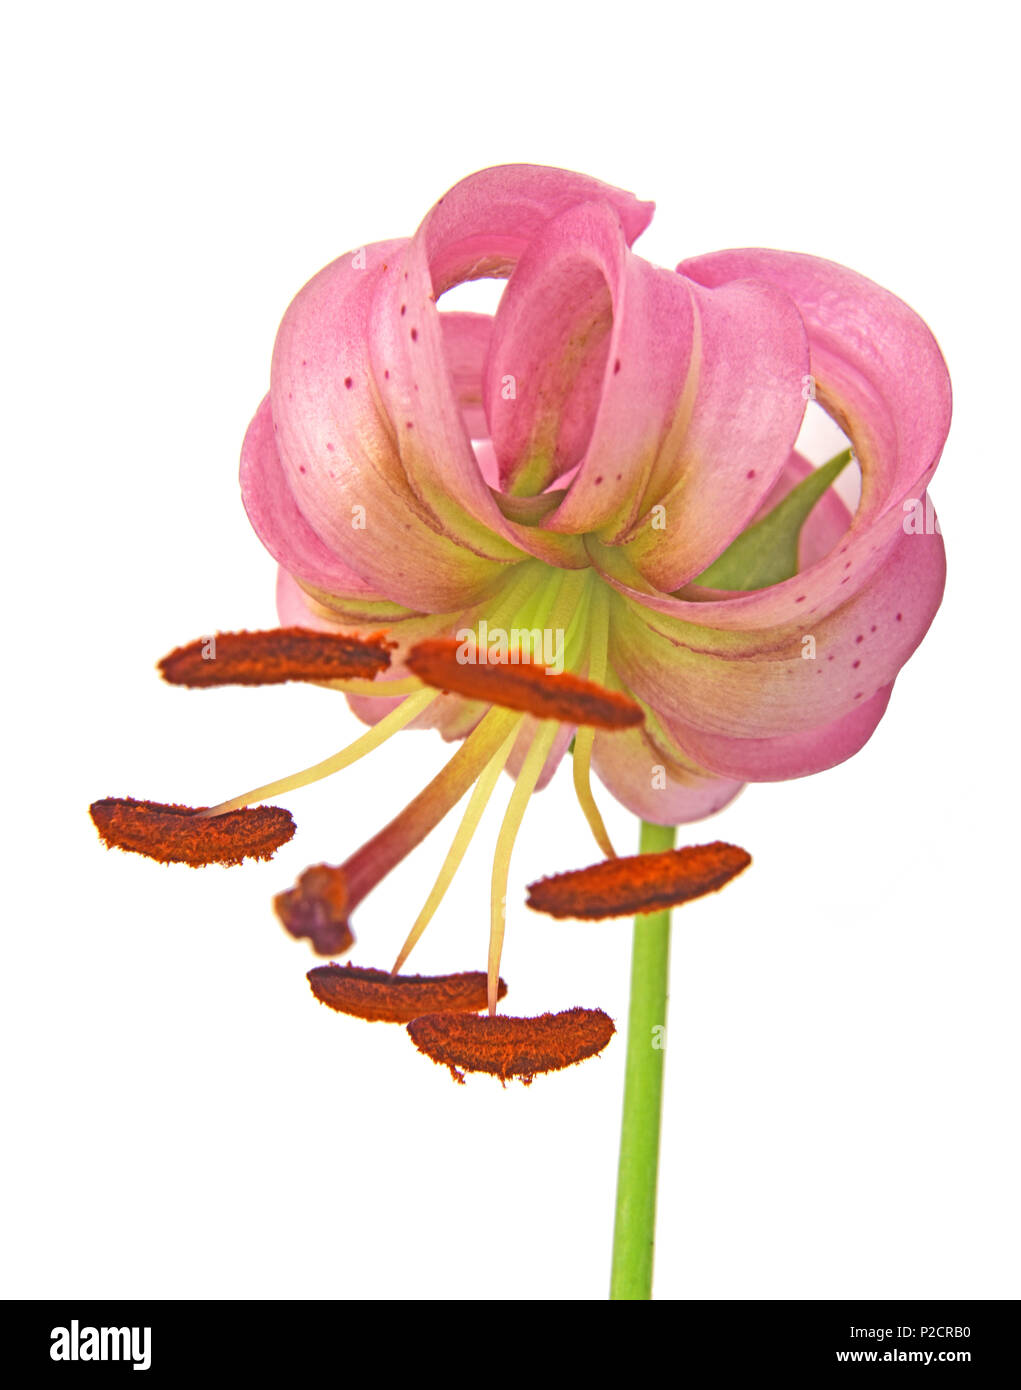 Nahaufnahme einer Blüte Martagon Lilie (Lilium martagon) auf weißem Hintergrund Stockfoto